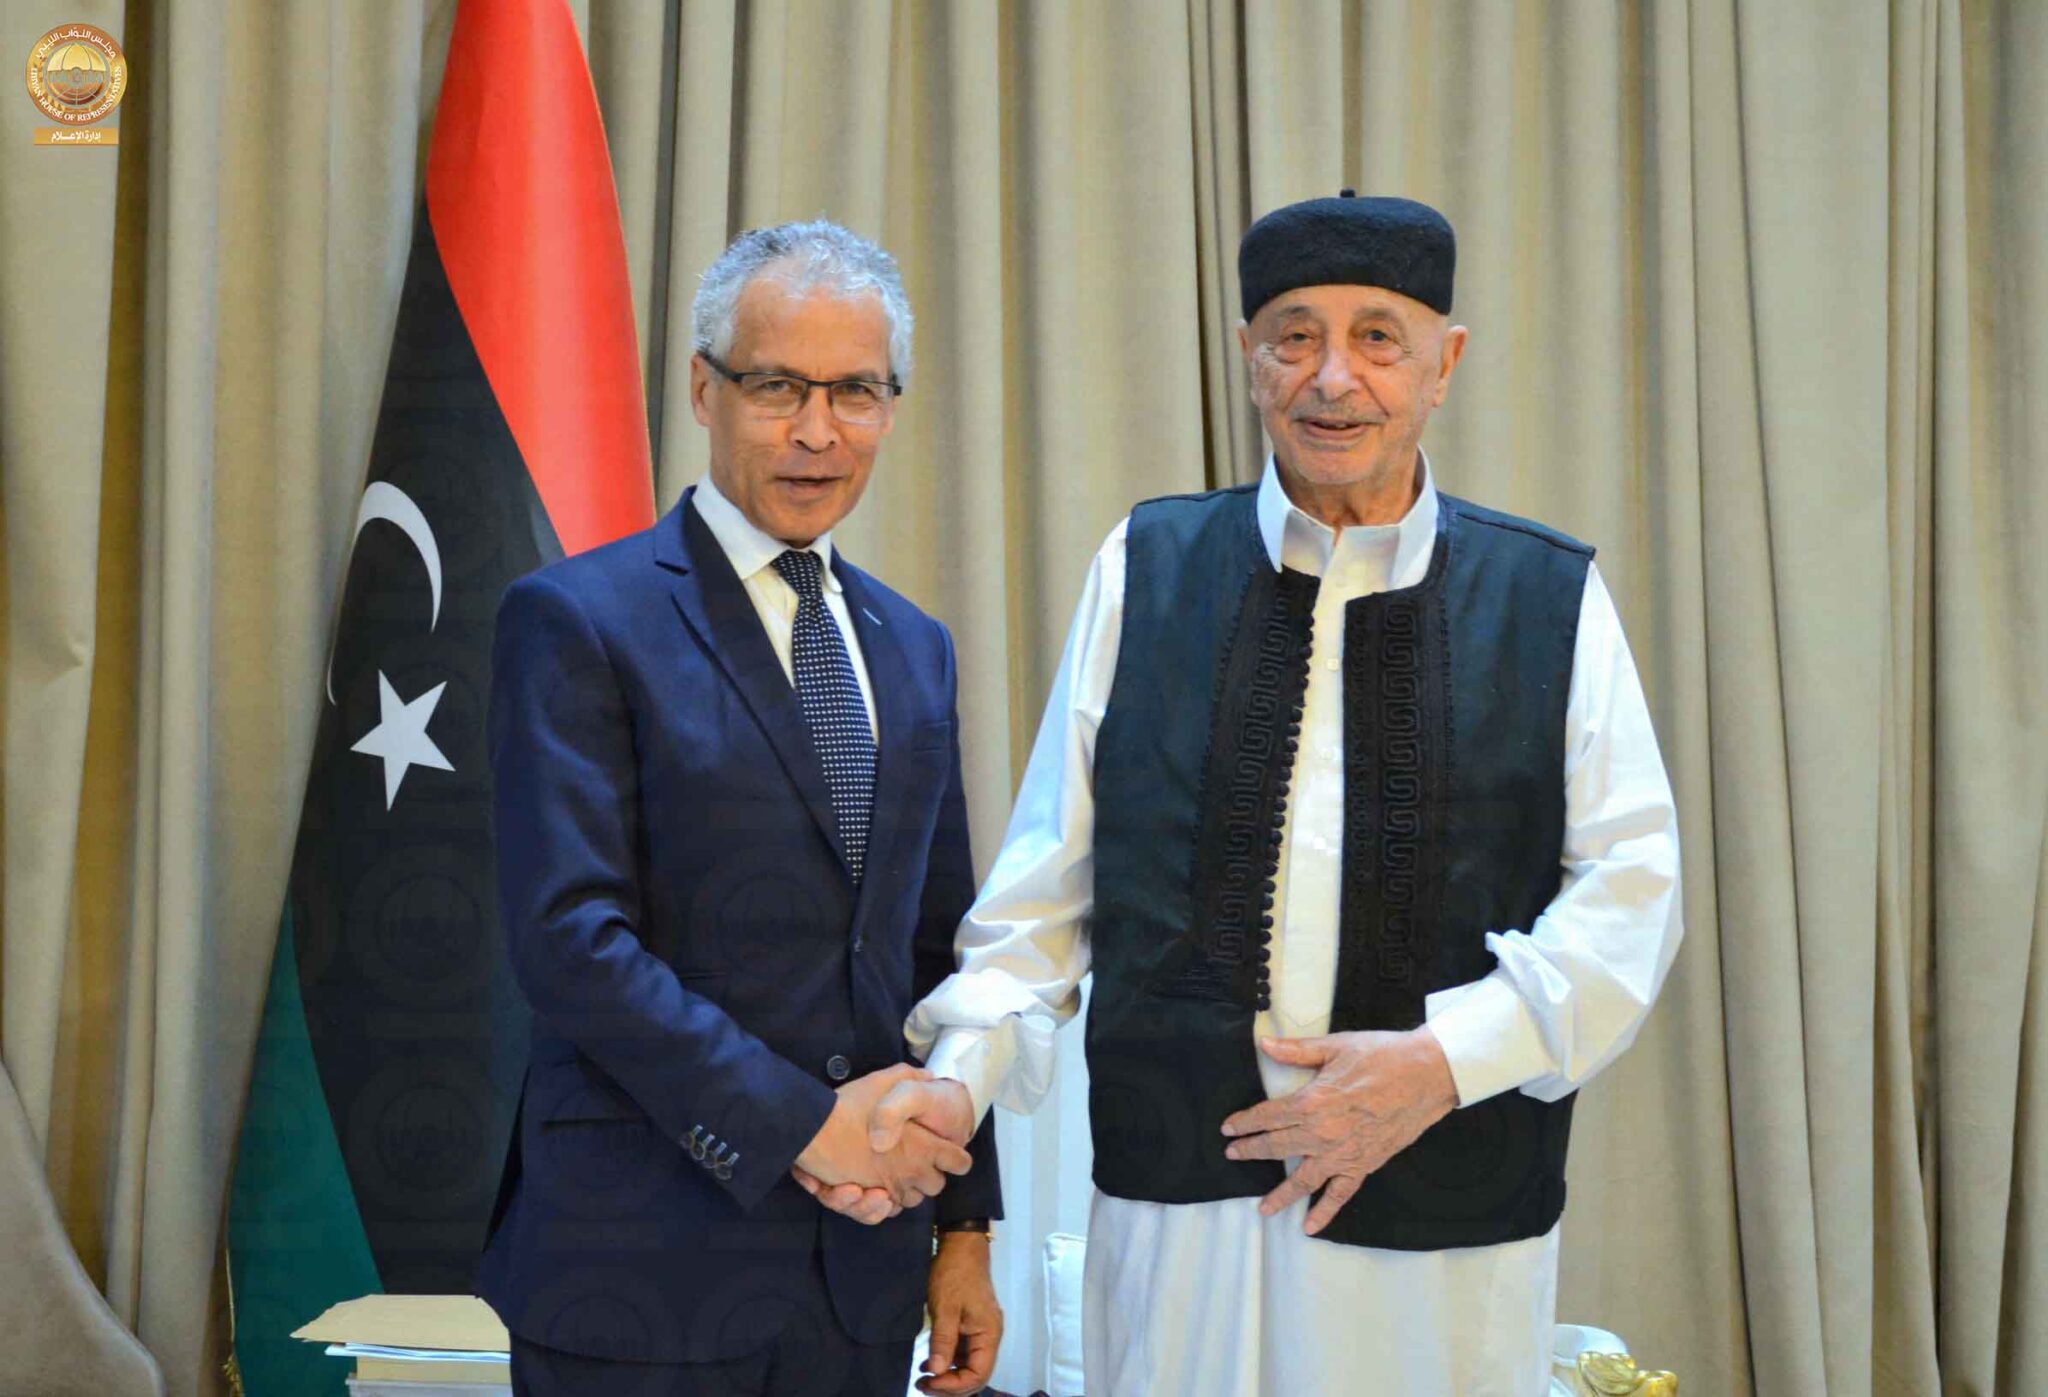 Встреча главы парламента Ливии Агилы Салеха (справа) и посла Франции в Ливии Мустафы Махараджа (слева)